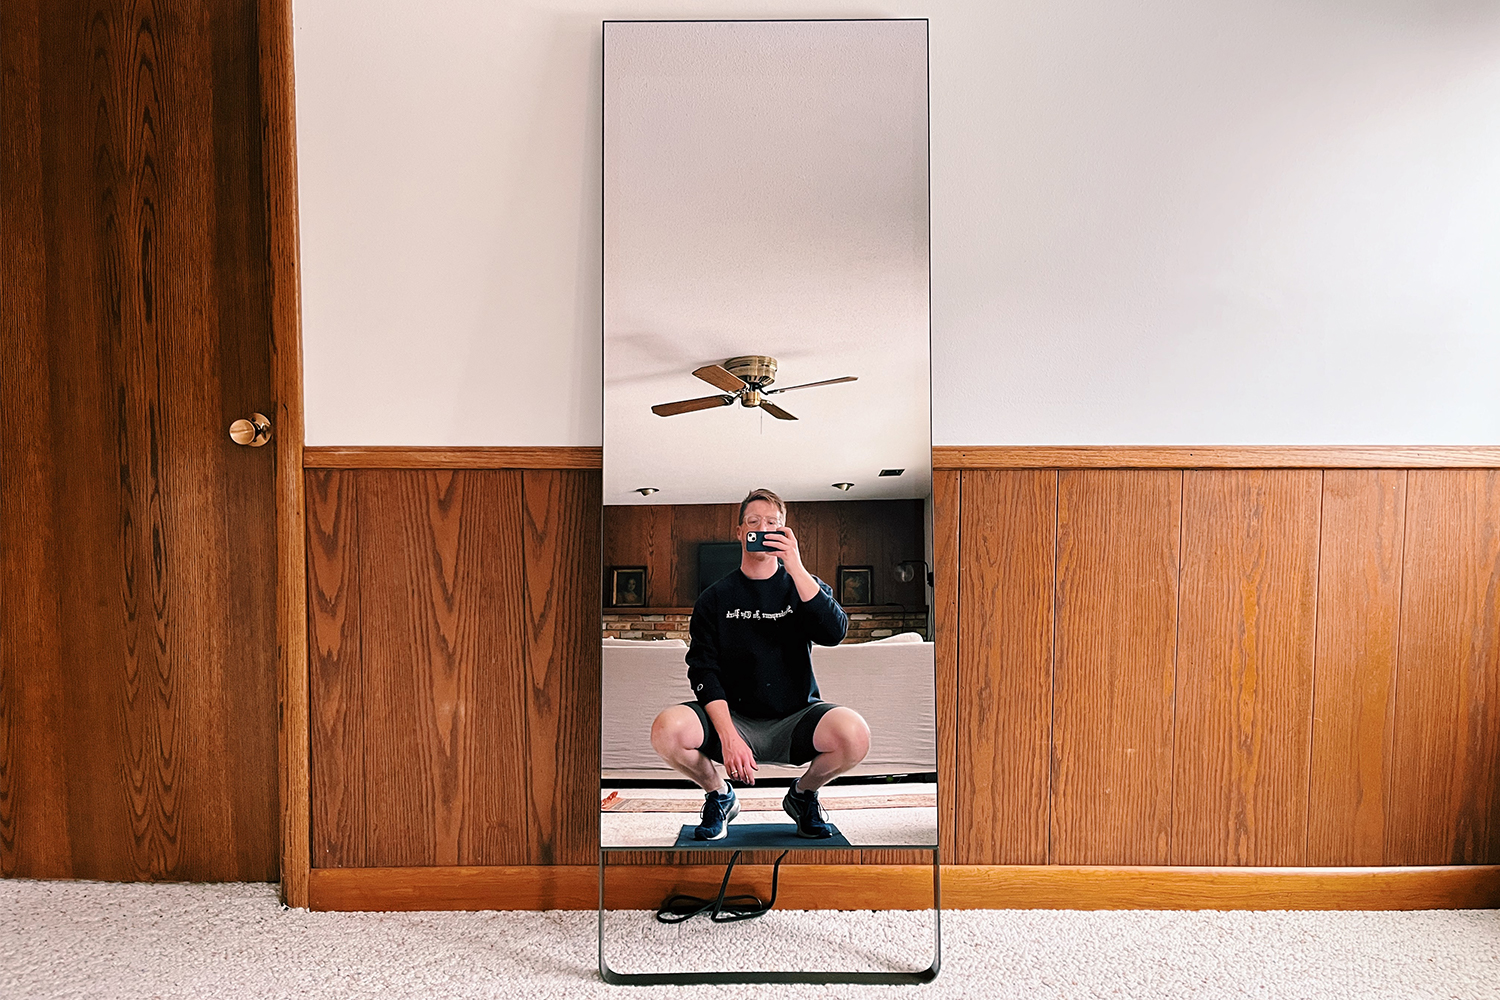 Le miroir d'exercice original, de Mirror, appuyé contre un mur à la maison.  Nous avons examiné l'appareil de fitness à domicile pour trouver les avantages et les inconvénients.